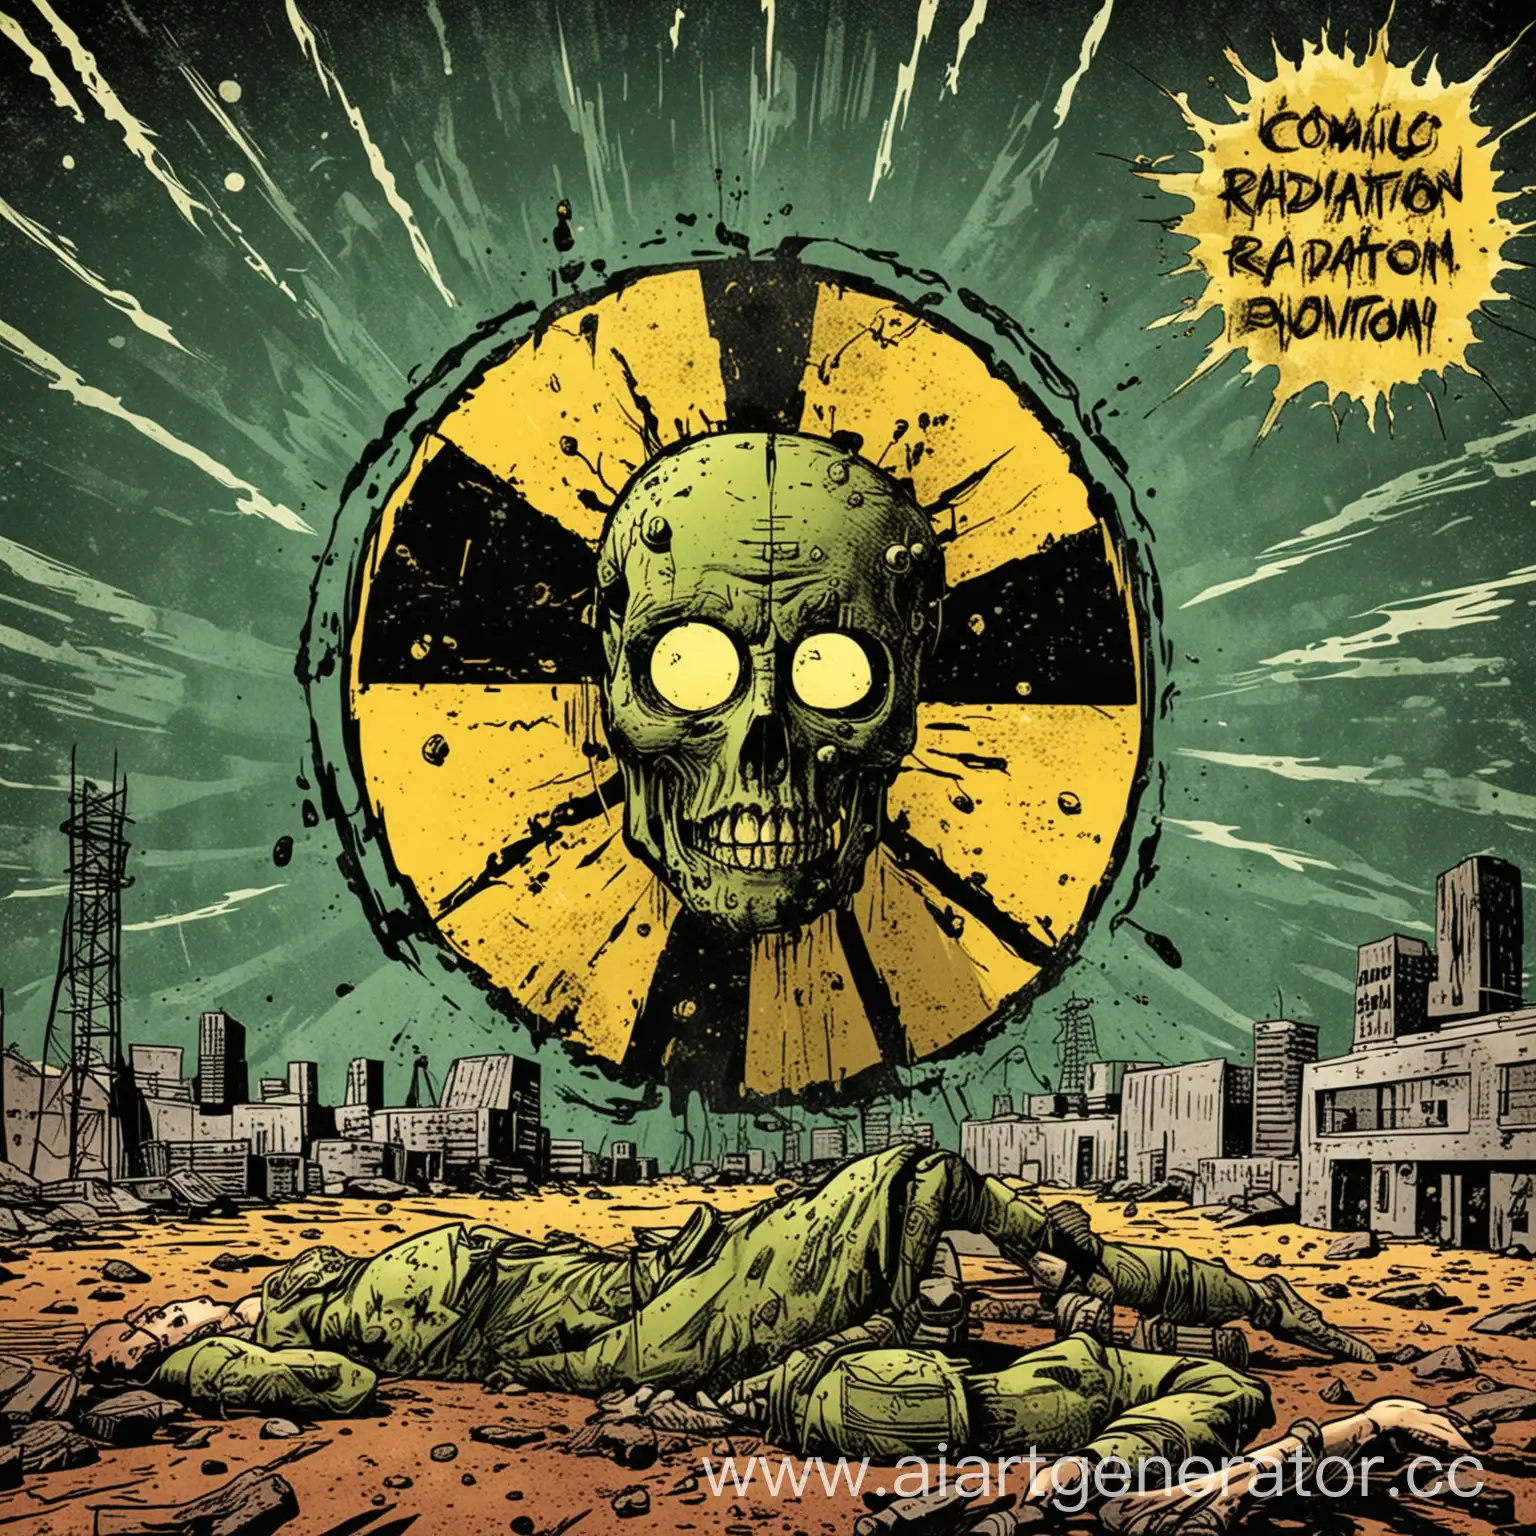 комикс 
радиация

